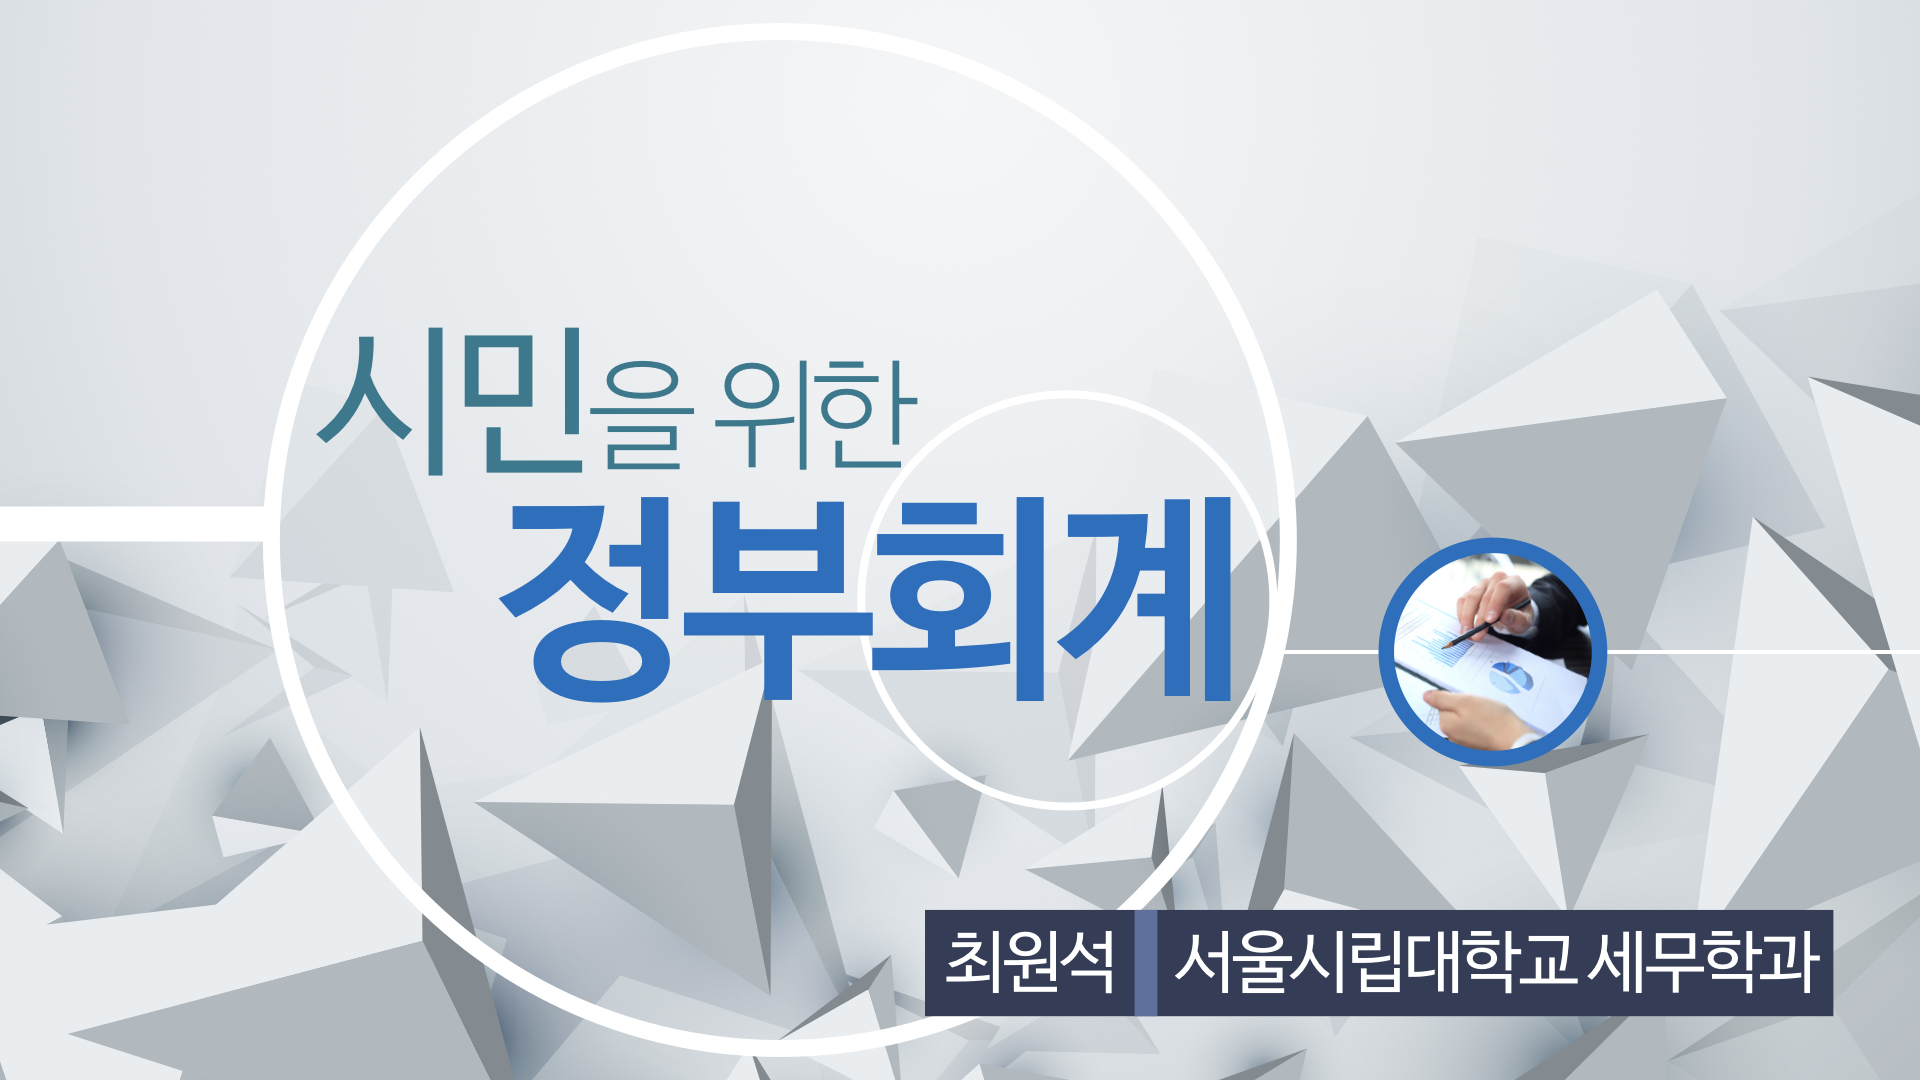 시민을 위한 정부회계 개강일 2017-10-24 종강일 2018-02-13 강좌상태 종료